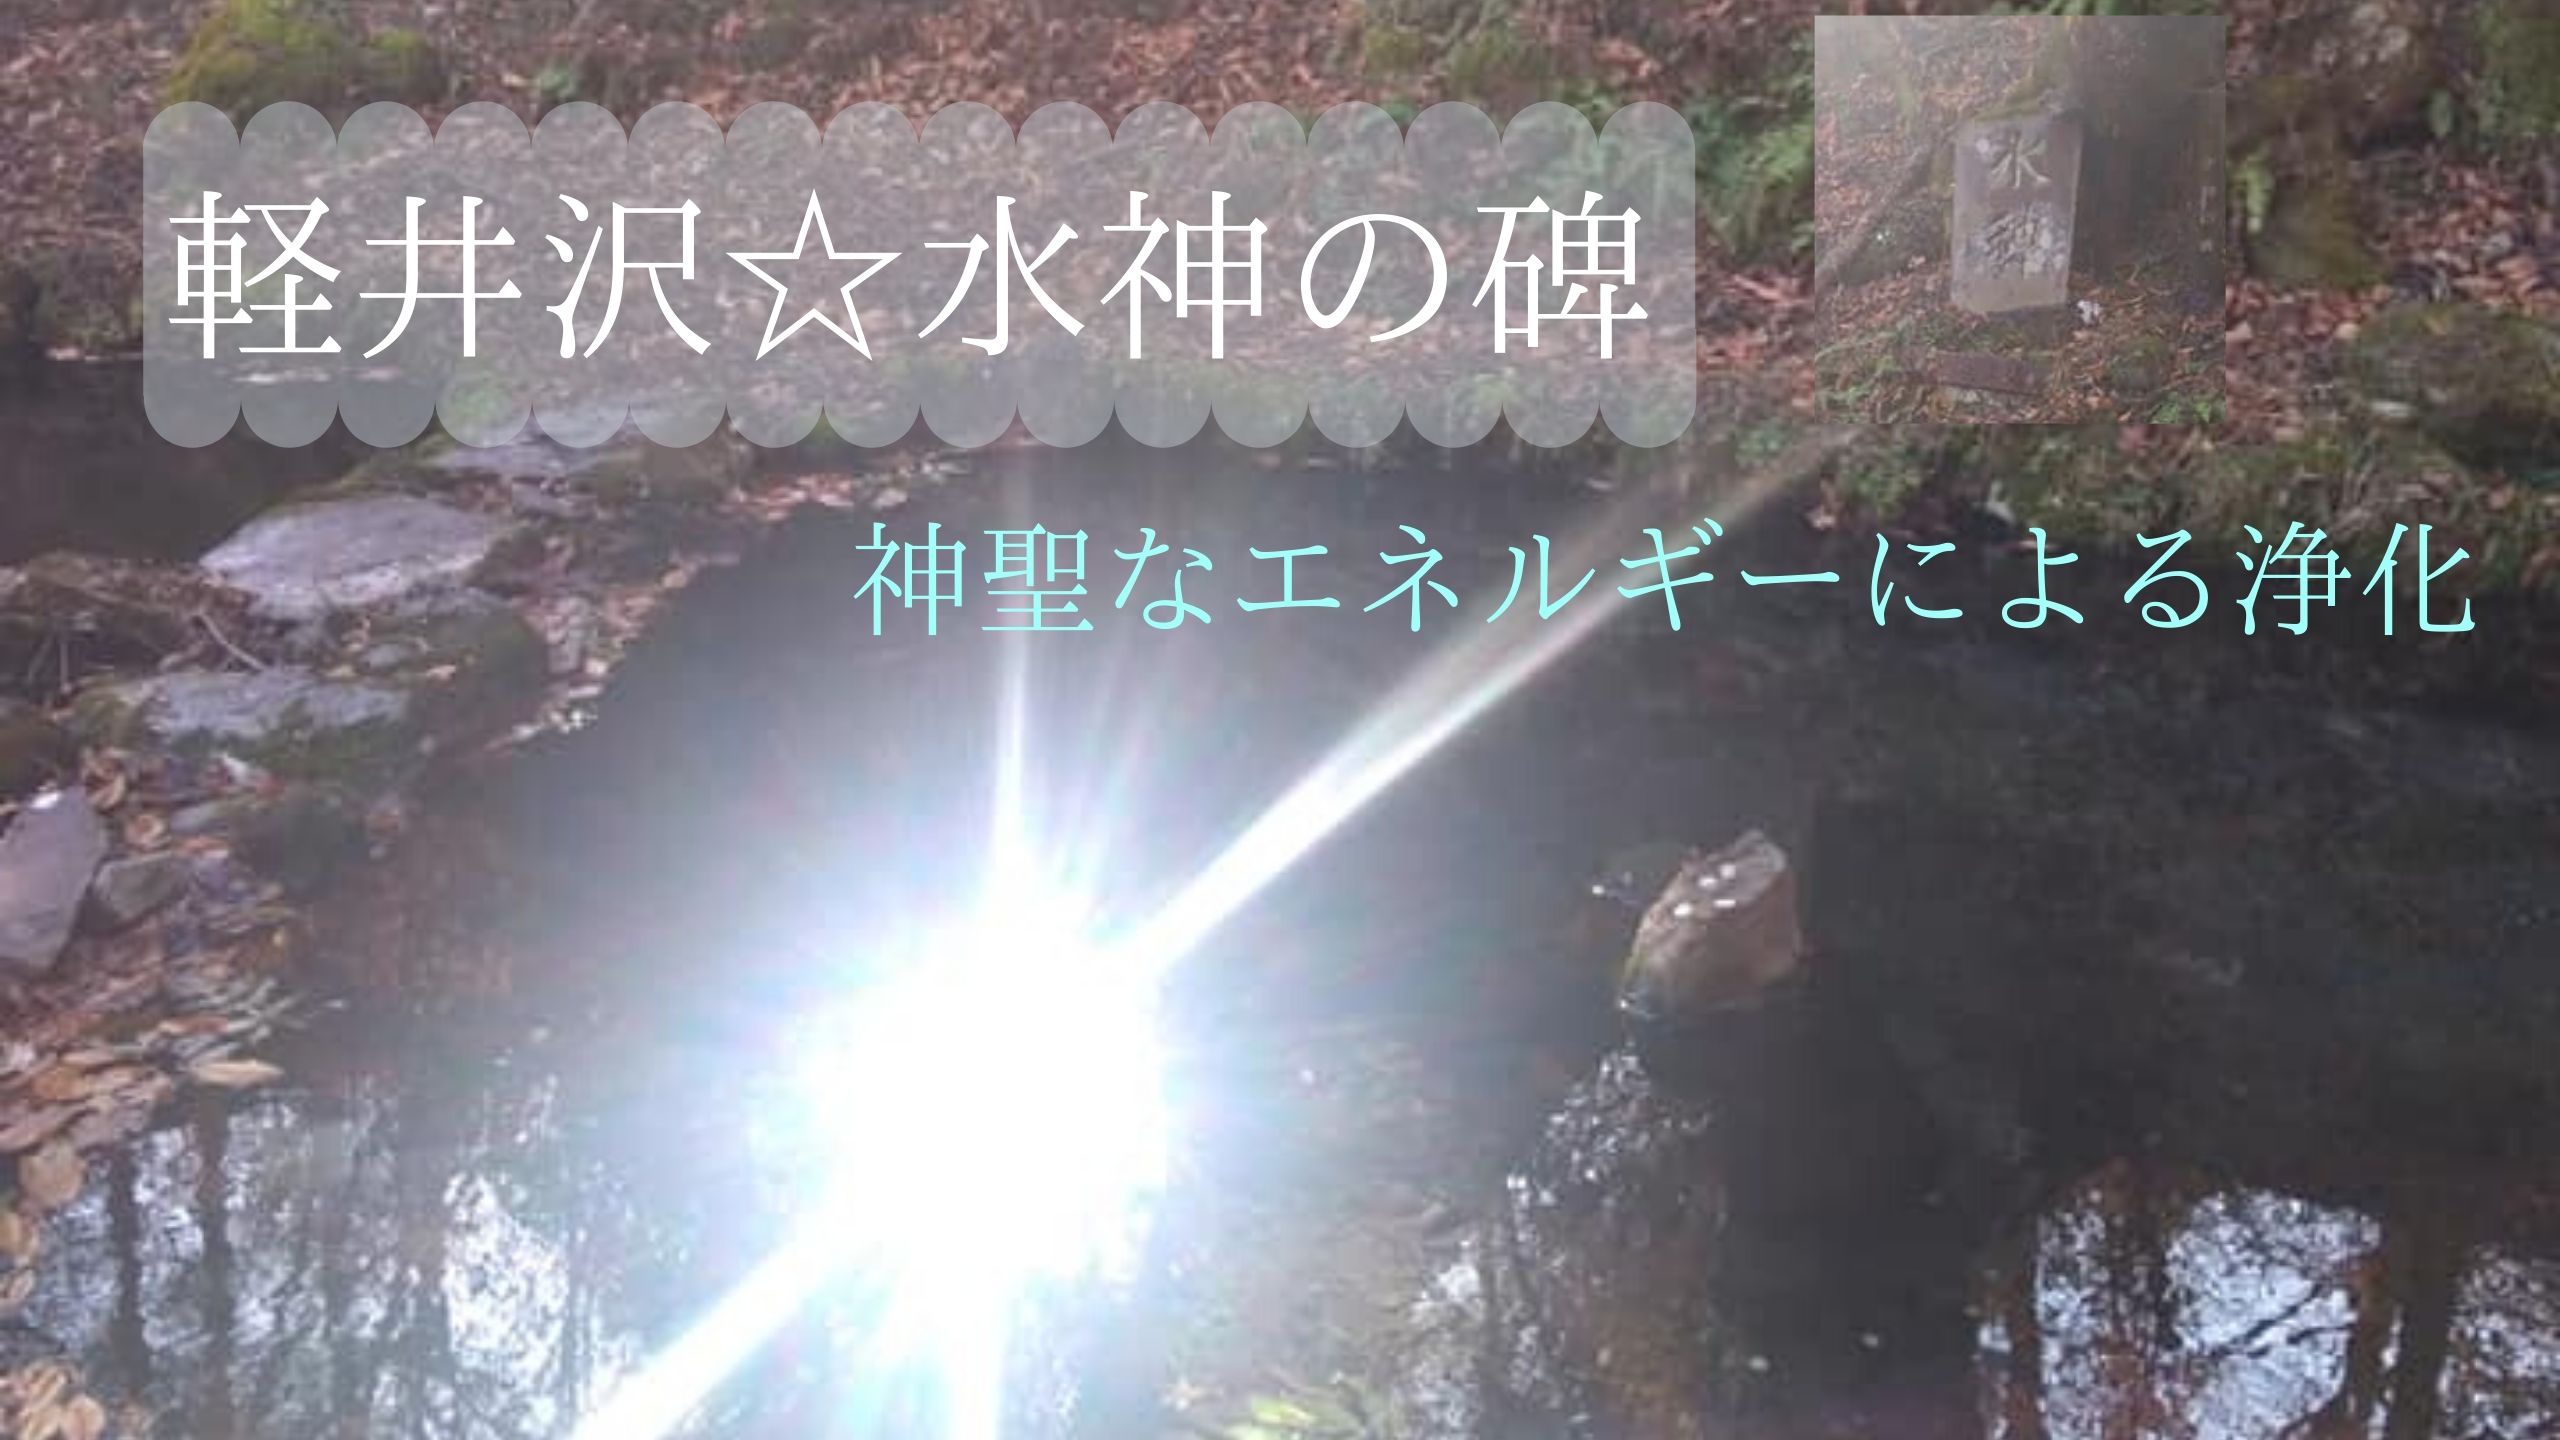 ✨❤️軽井沢『水神』による強力浄化エネルギー動画❤️✨